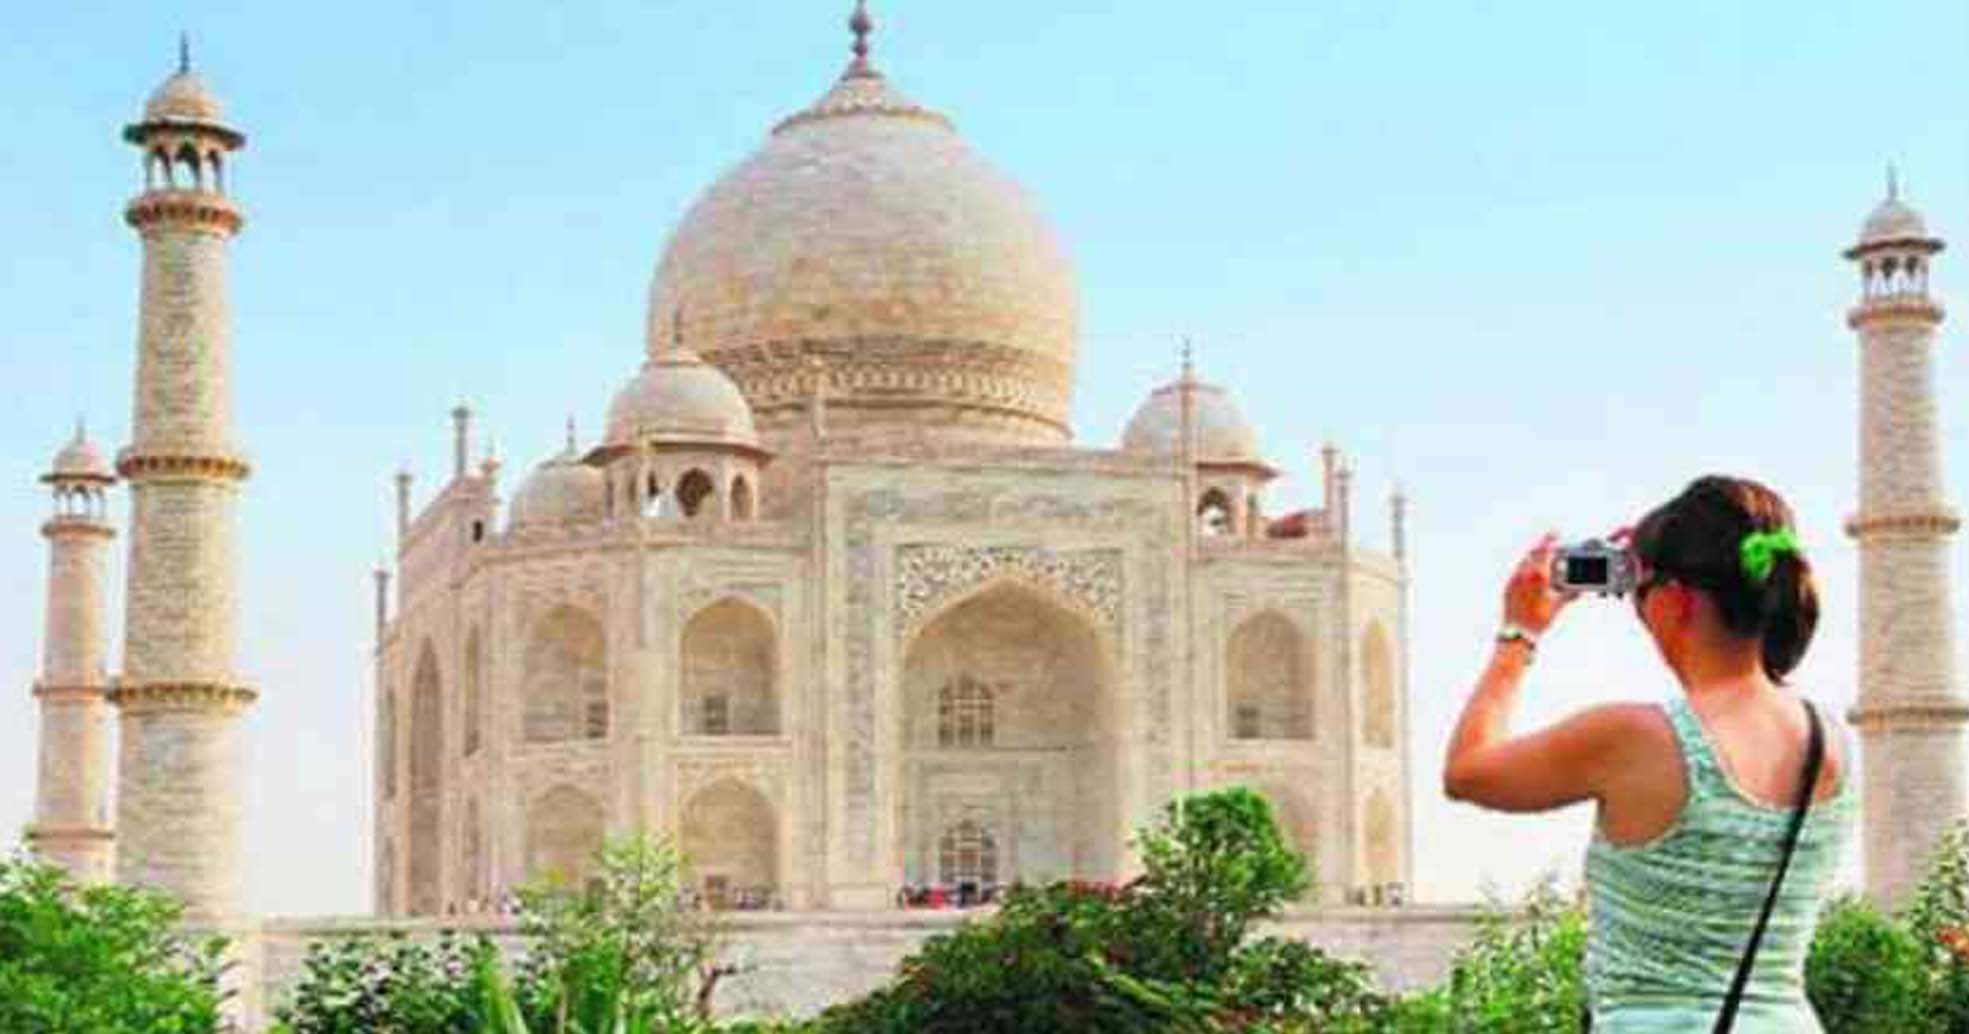 अब पर्यटक 31 मई तक नहीं कर सकेंगे ताजमहल का दीदार